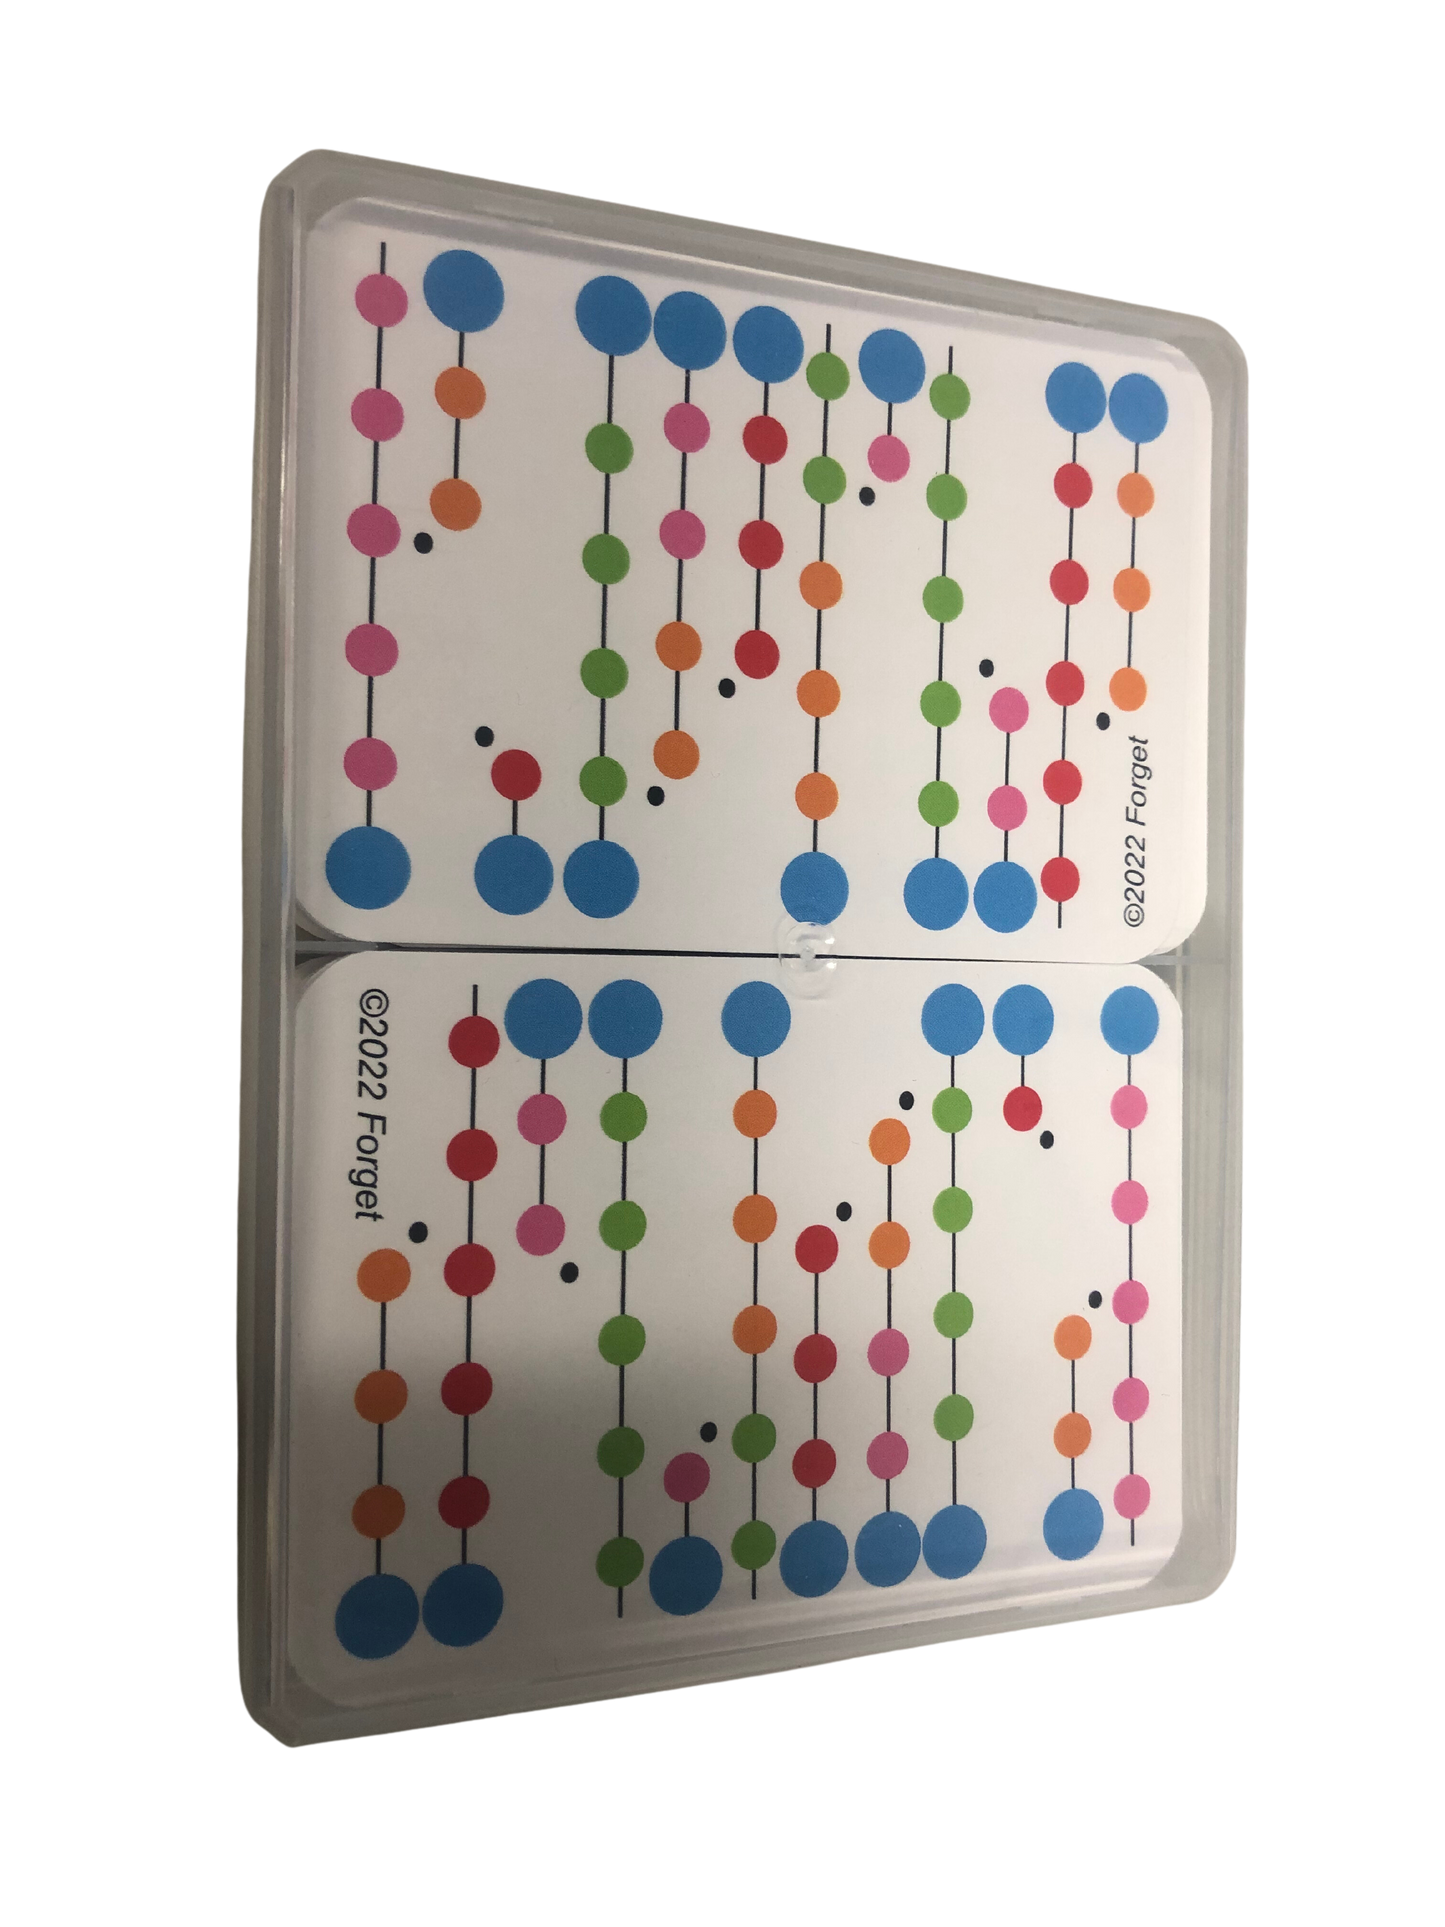 Macromolecular Game: Kartenspiel zur radikalischen Polymerisation